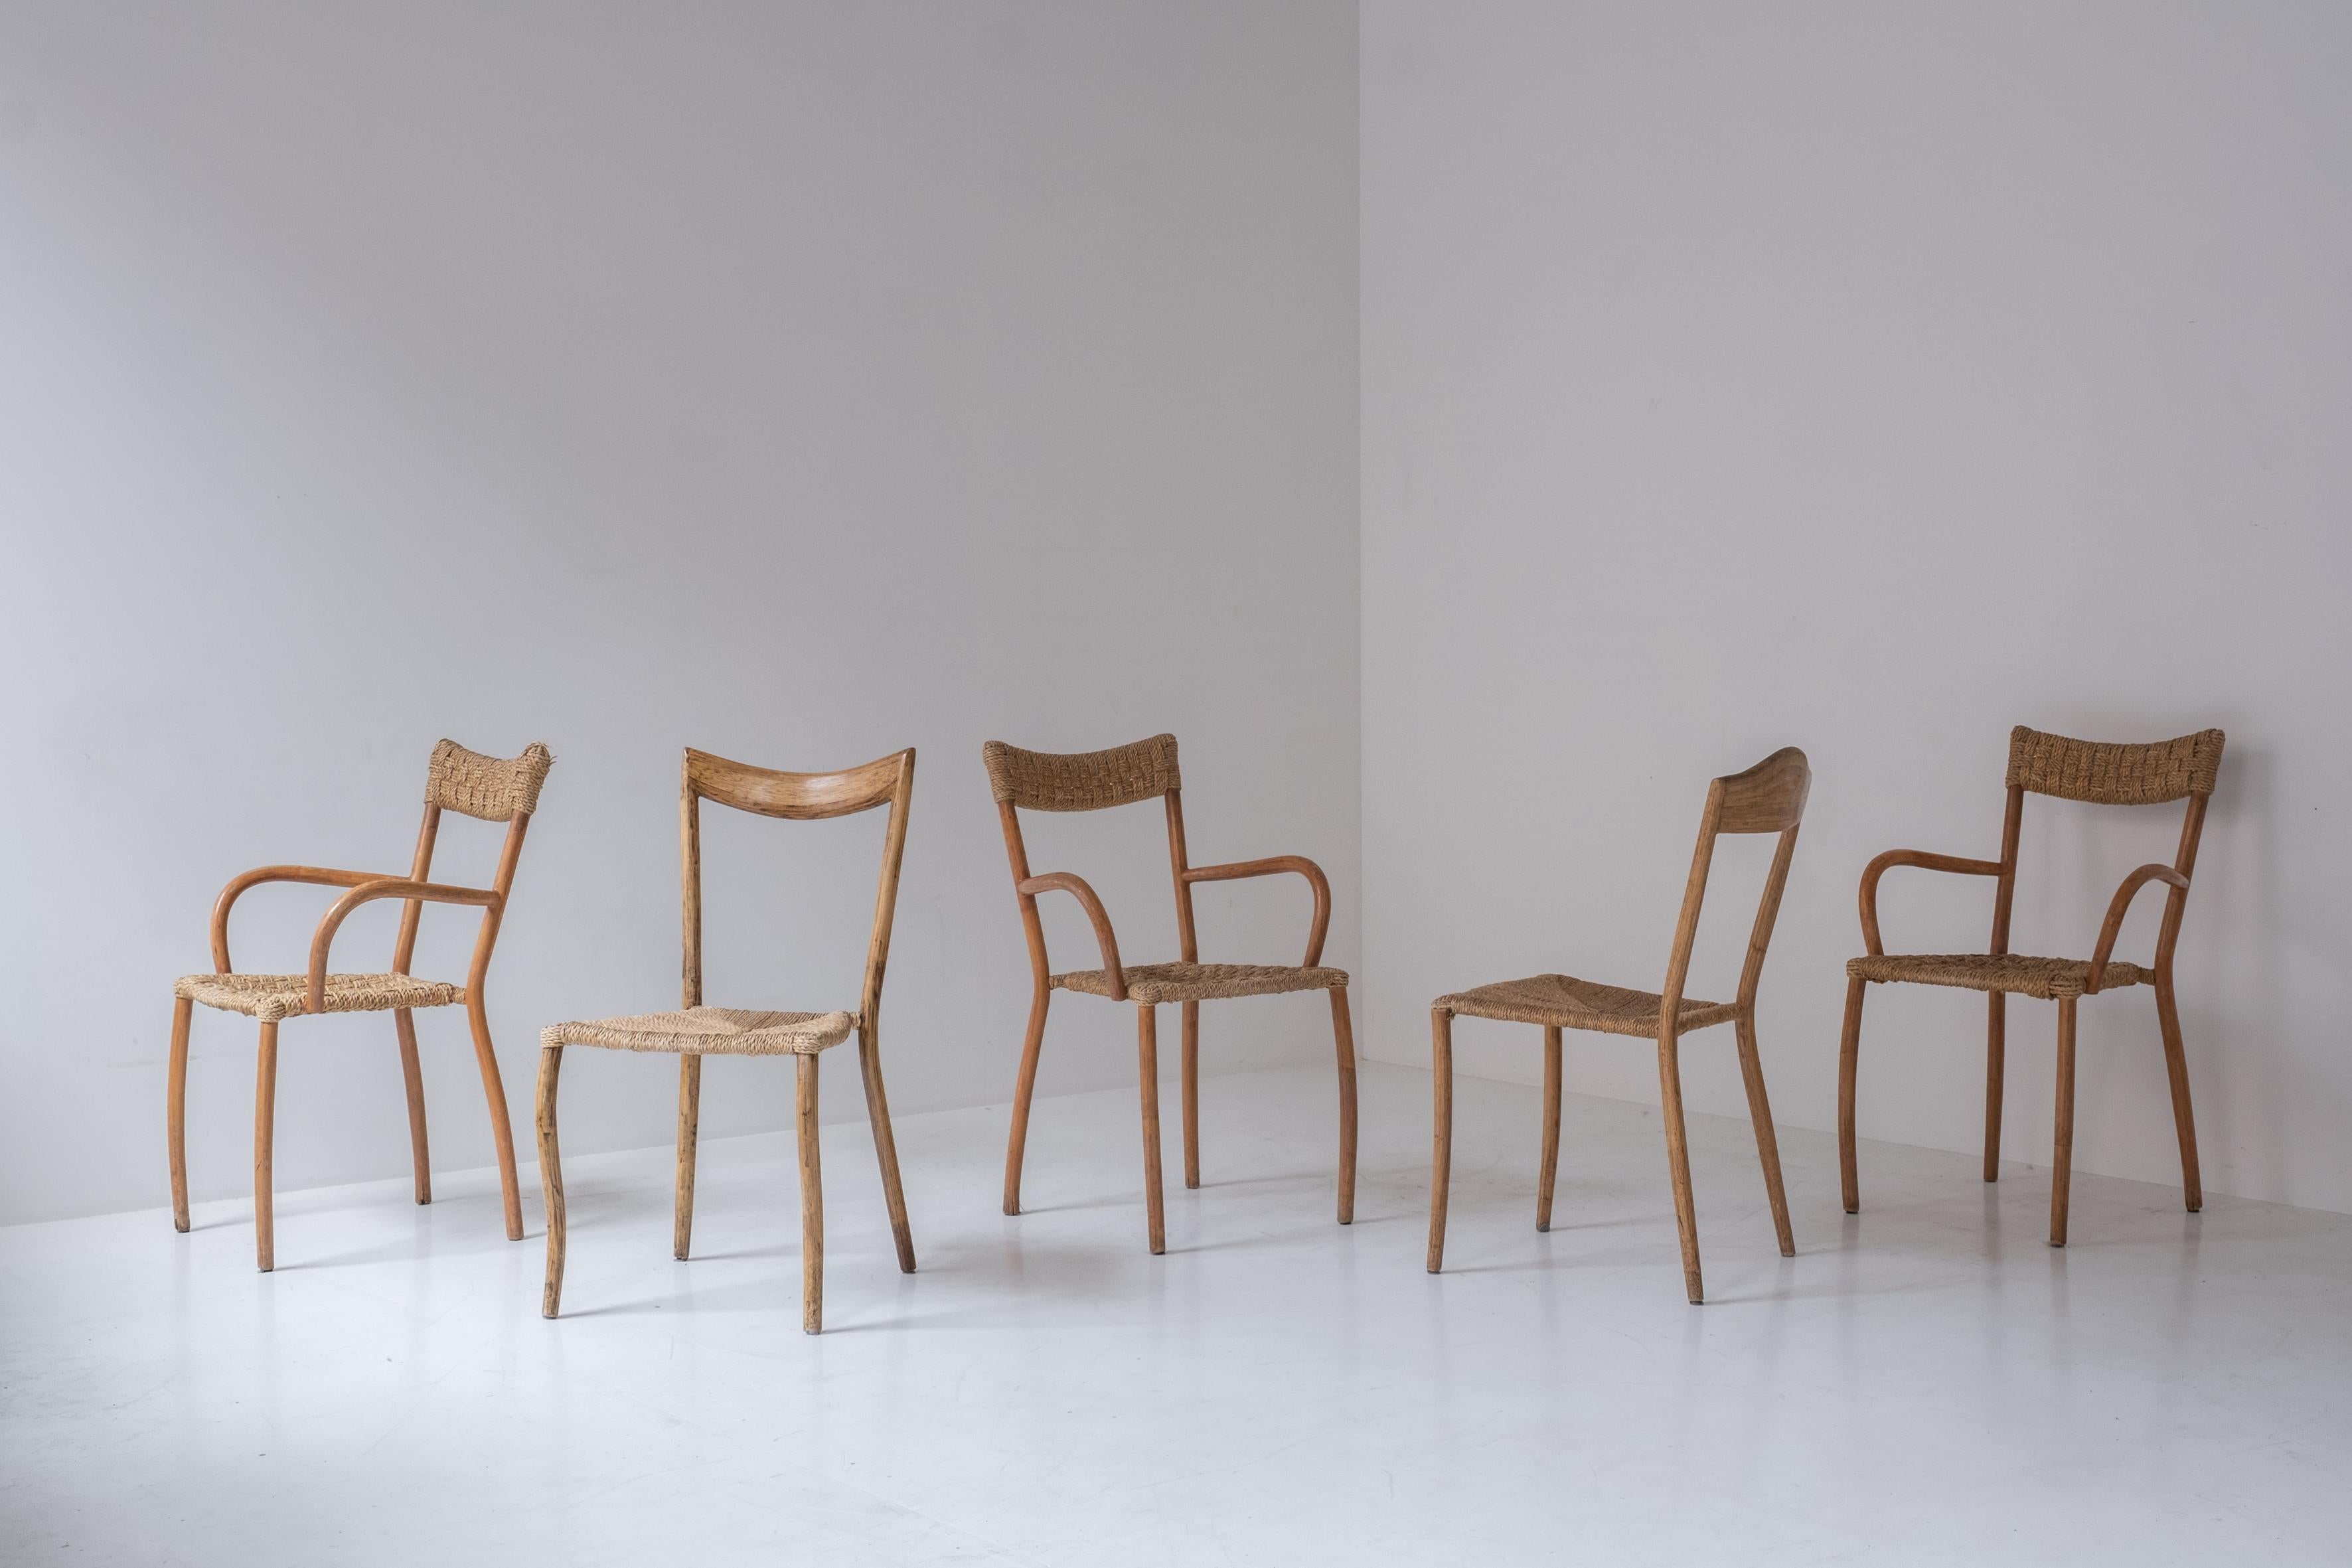 Ensemble de 5 chaises de salle à manger sculpturales de France, conçues dans les années 1960. Ces chaises ont des sièges en cordon de papier et sont légèrement différentes les unes des autres. Quelques marques liées à l'âge, mais globalement en bon